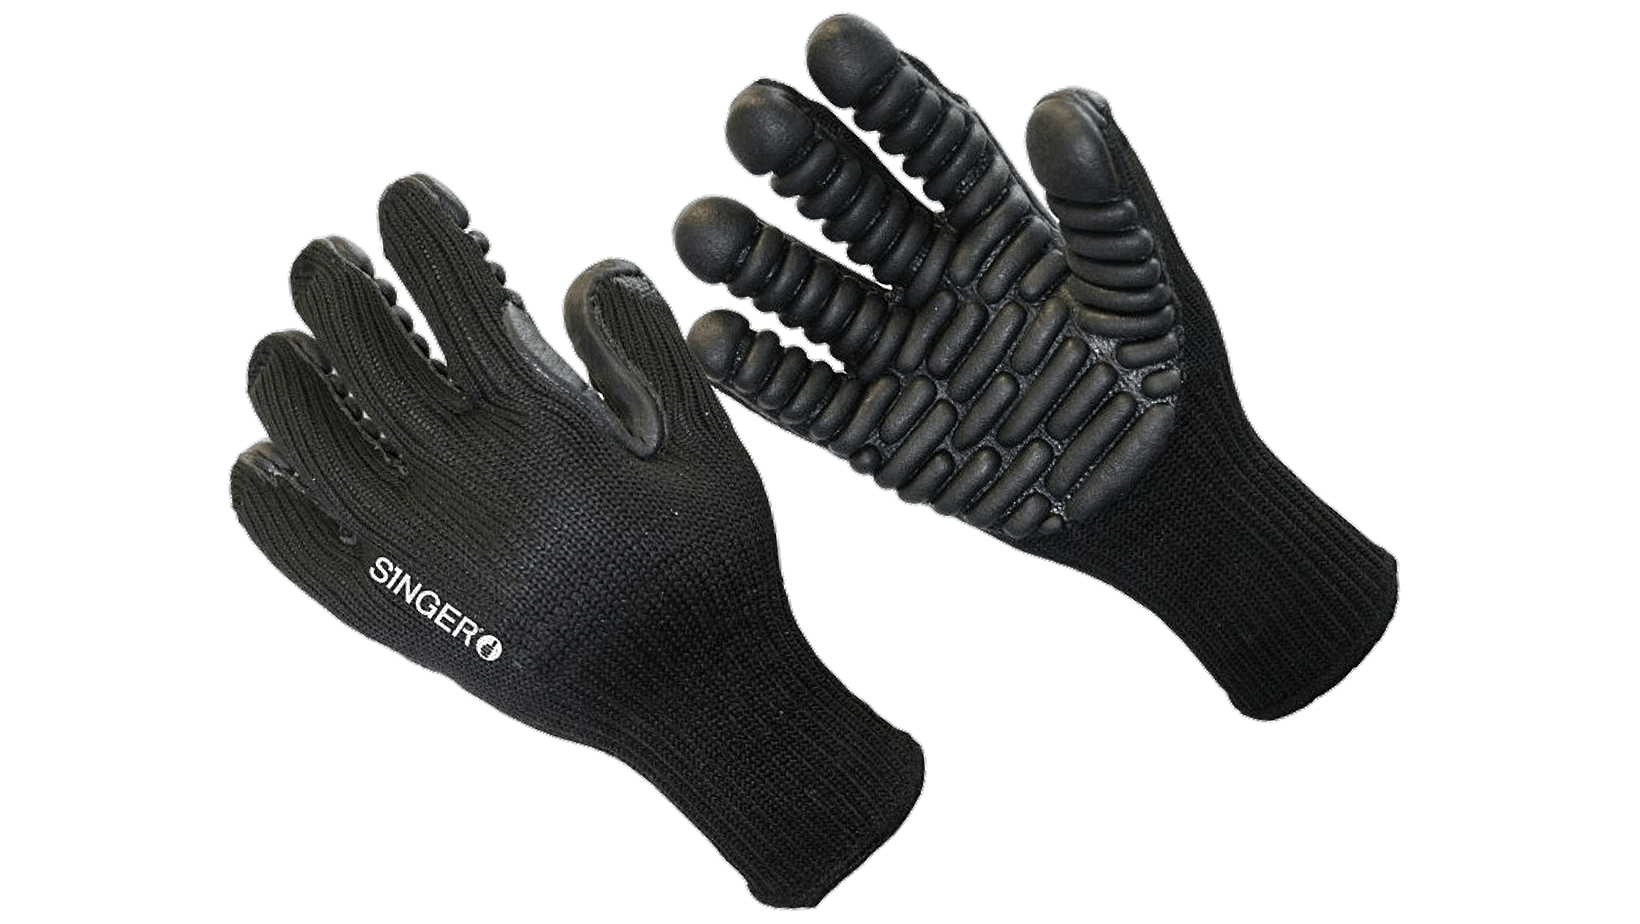 VBR Vibration Glove – SINGER – Kooheji Industrial Safety